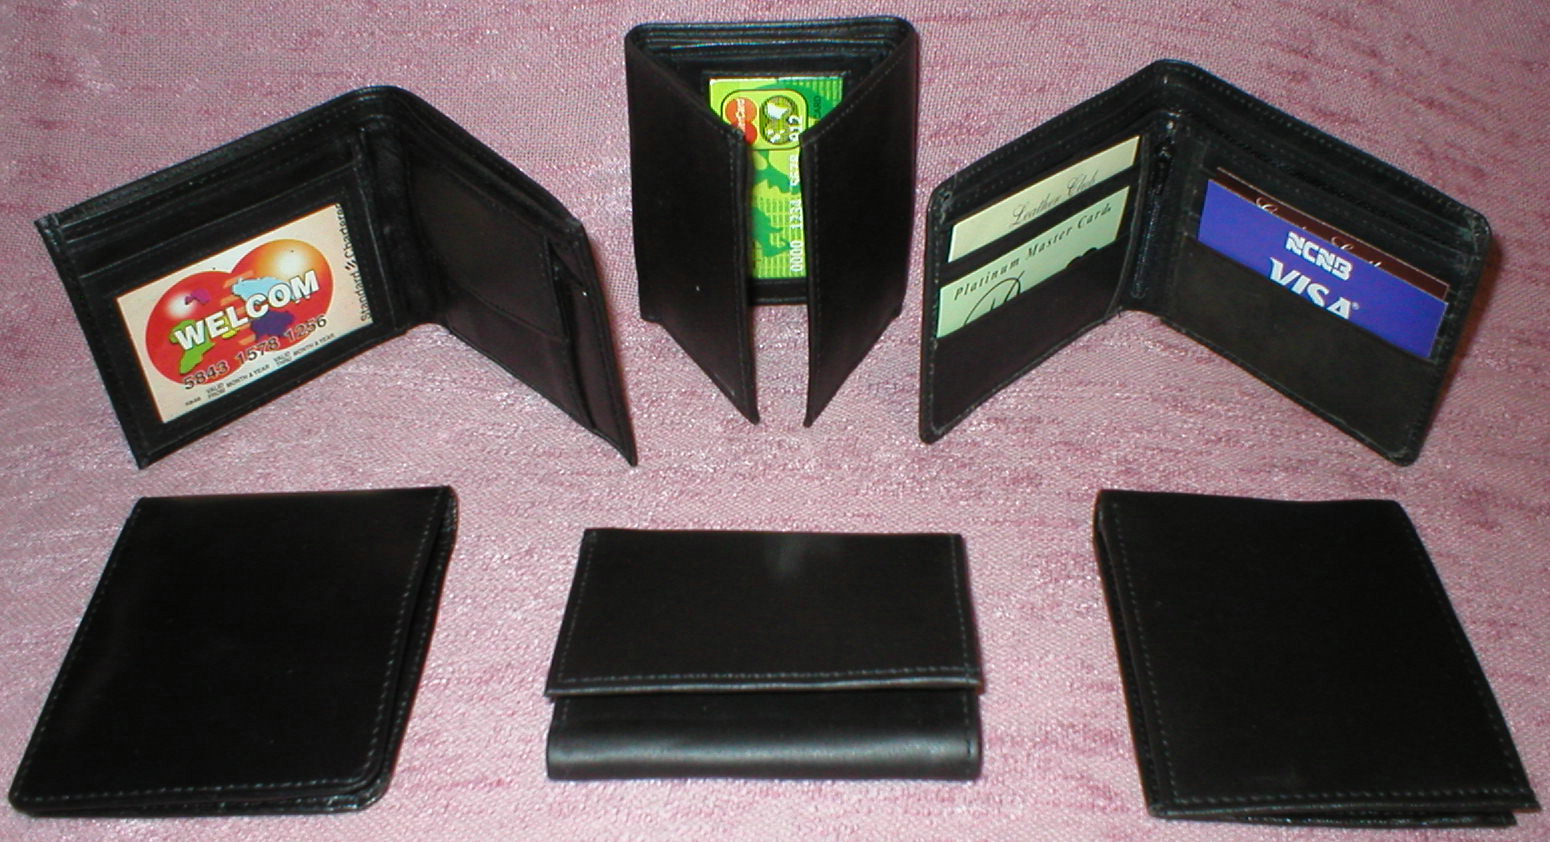 Wholesale Men's wallet,30 Pieces